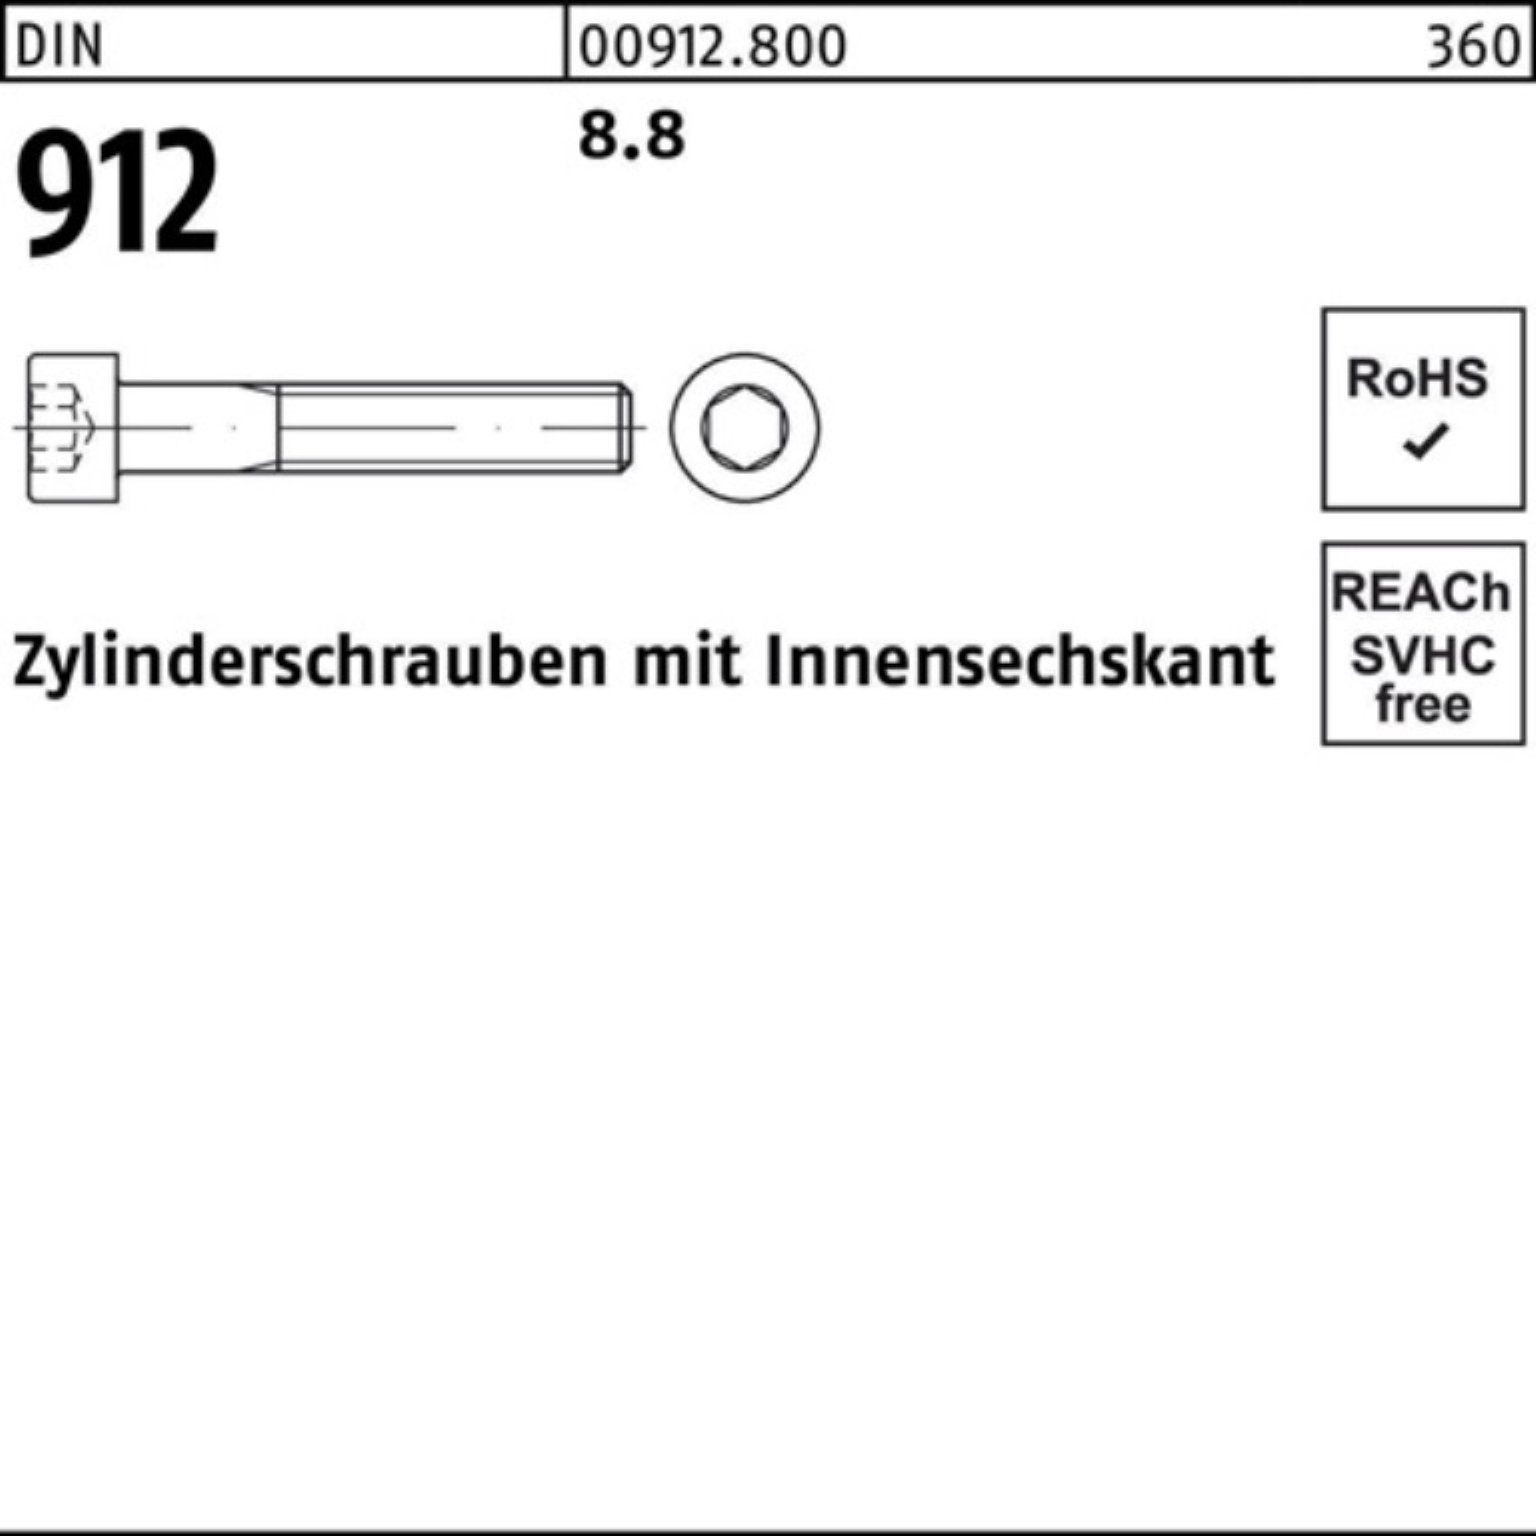 Reyher Zylinderschraube 8.8 1 100er DIN Stück Pack Innen-6kt Zylinderschraube 912 DI 350 M24x